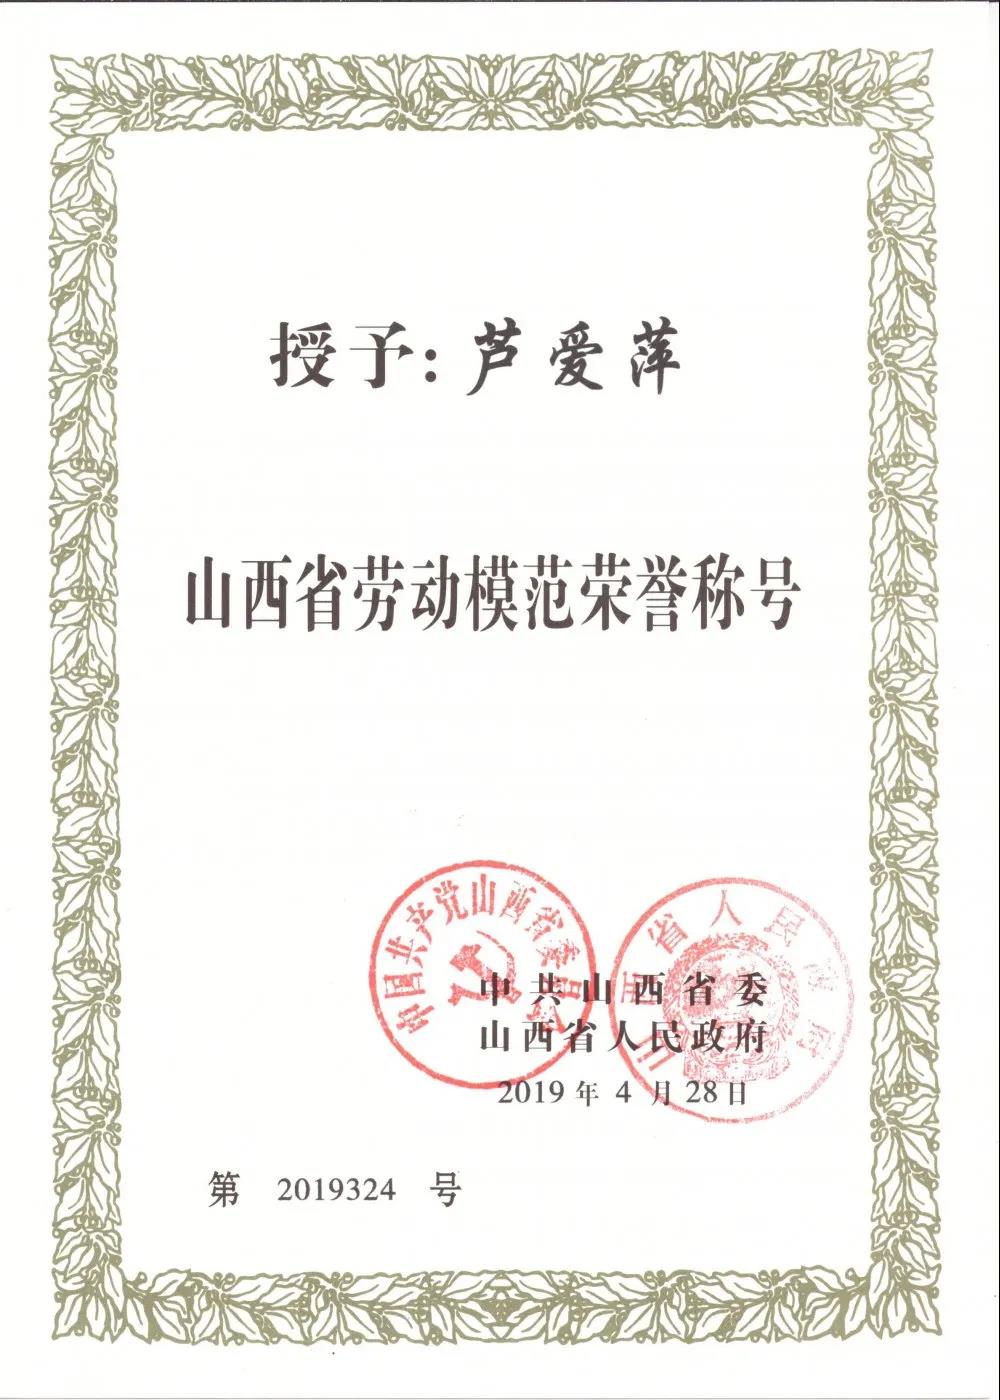 祝贺我公司“芦爱萍”荣获全国劳动模范荣誉称号！(图8)